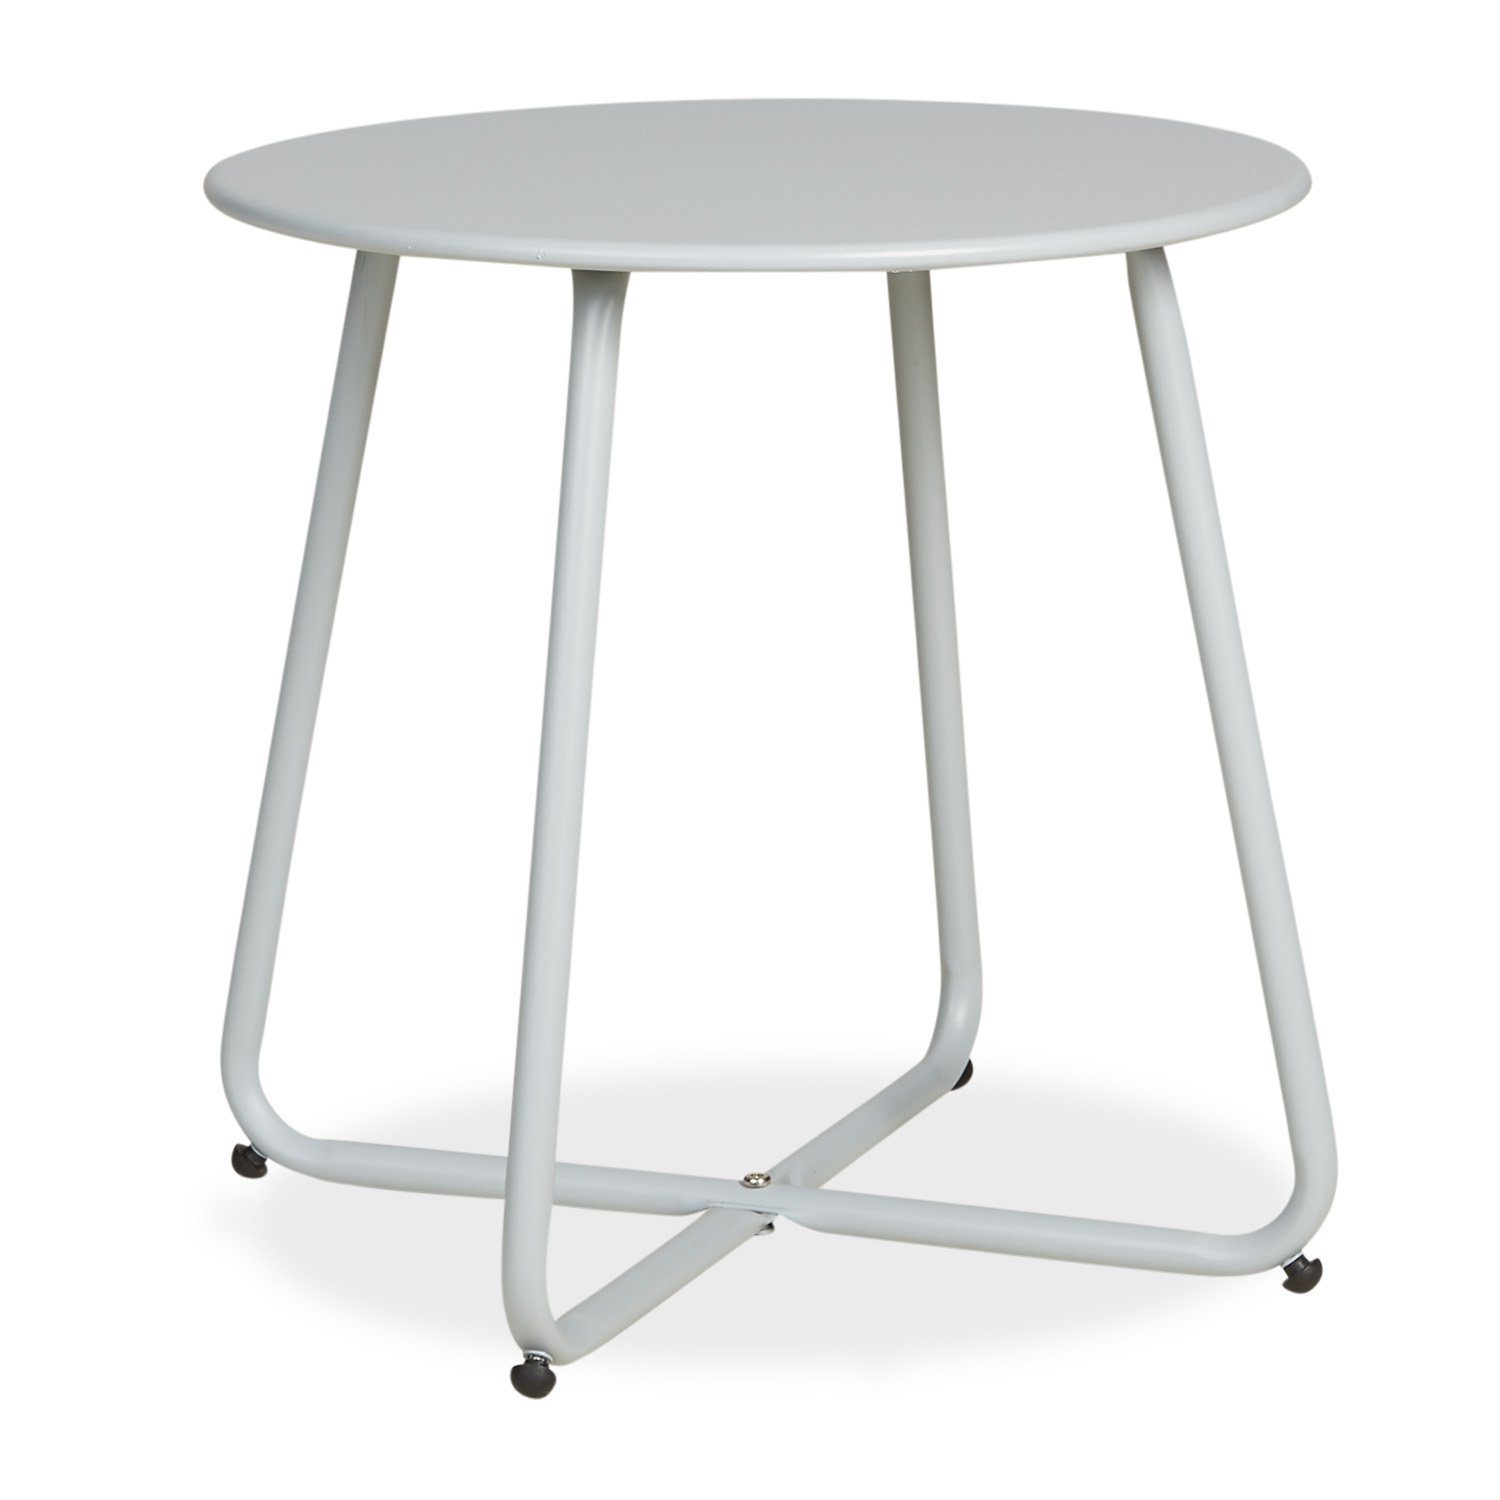 (kein Homestyle4u grau grau grau Metall Gartentisch | | Beistelltisch Rund Kaffeetisch Tisch Set)